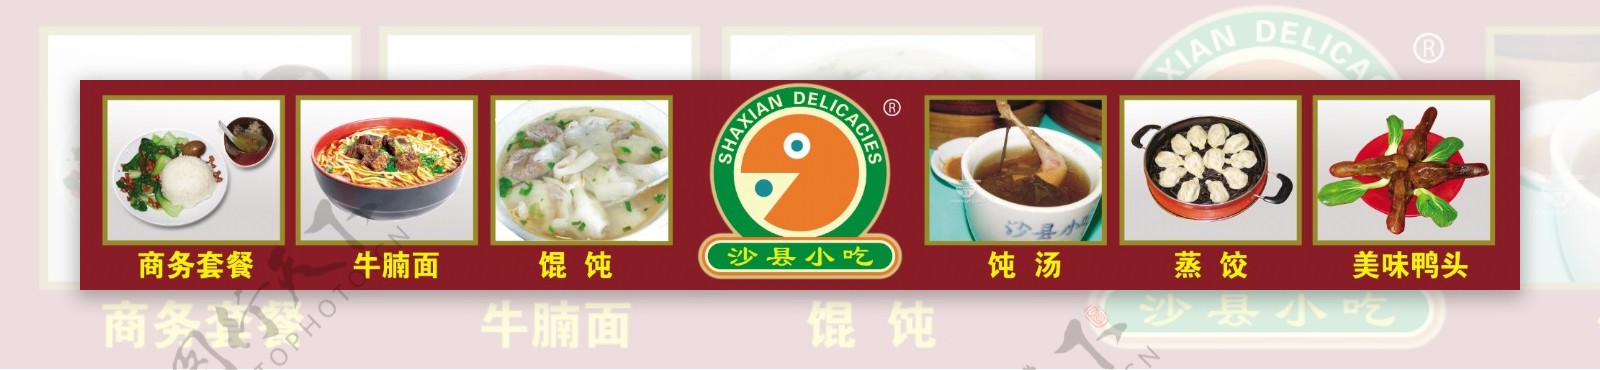 沙县小吃横版画图片